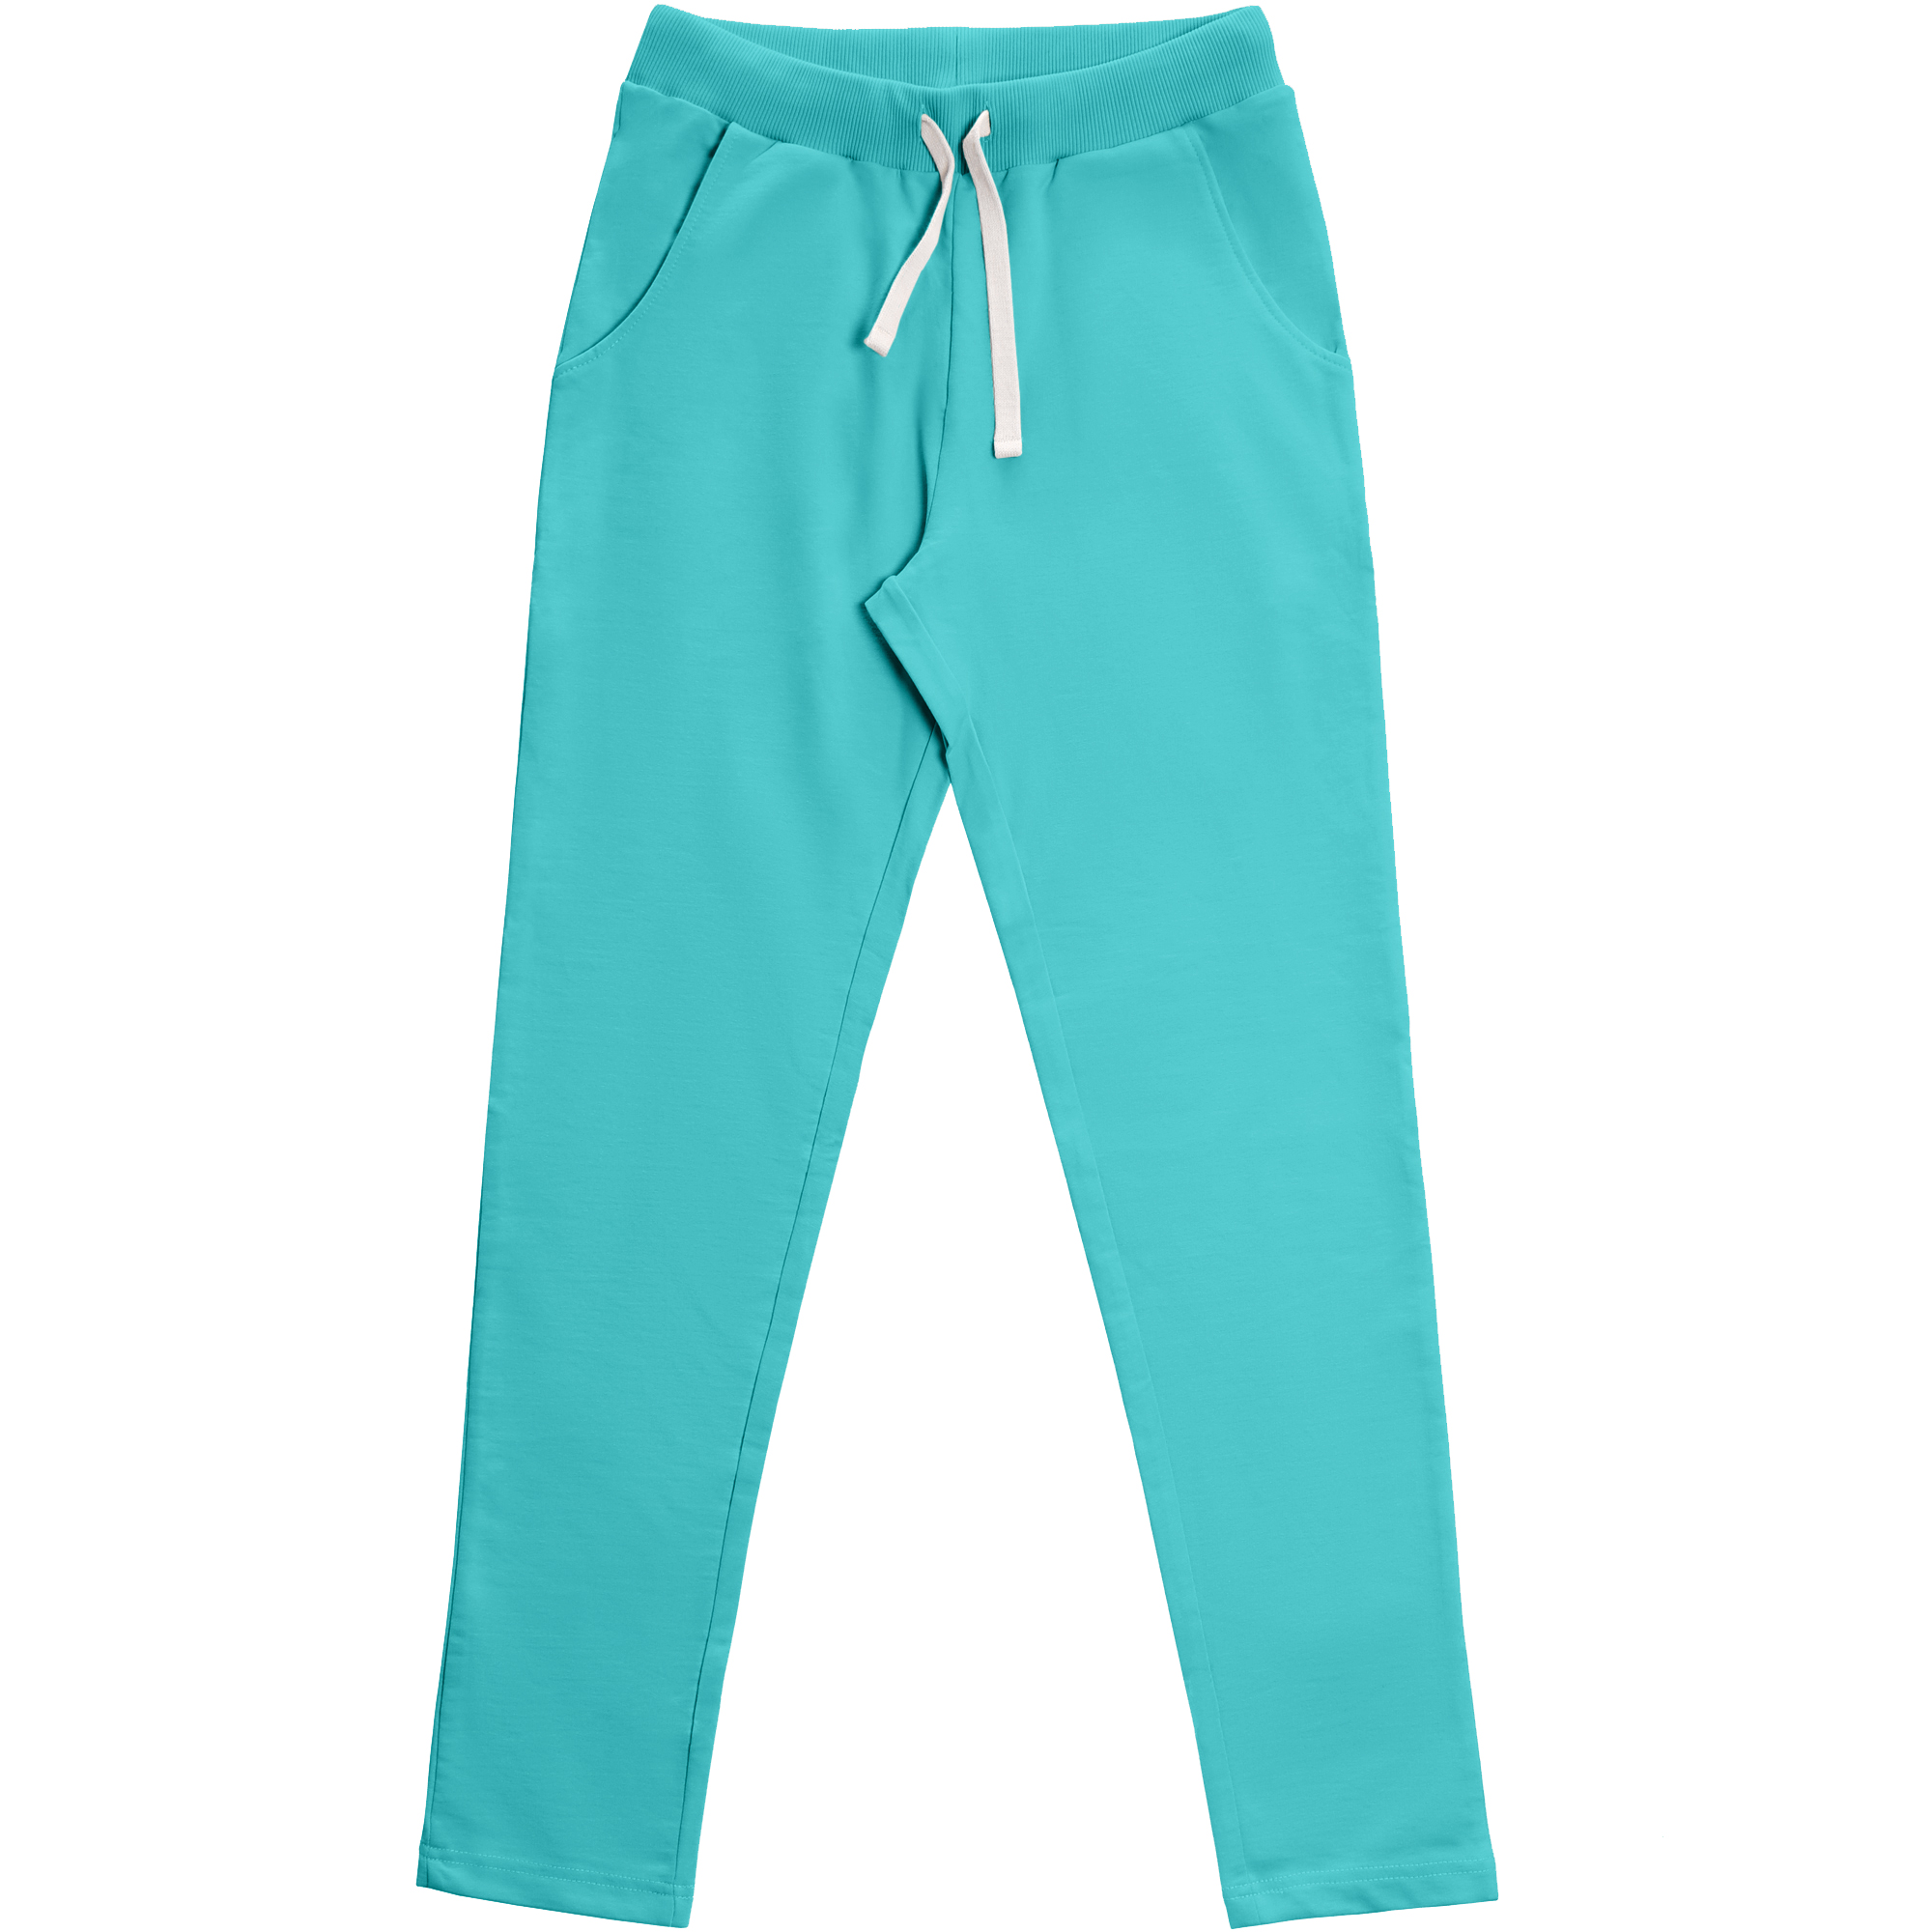 Женские брюки Birlik изумрудные, цвет изумрудный, размер S - фото 1